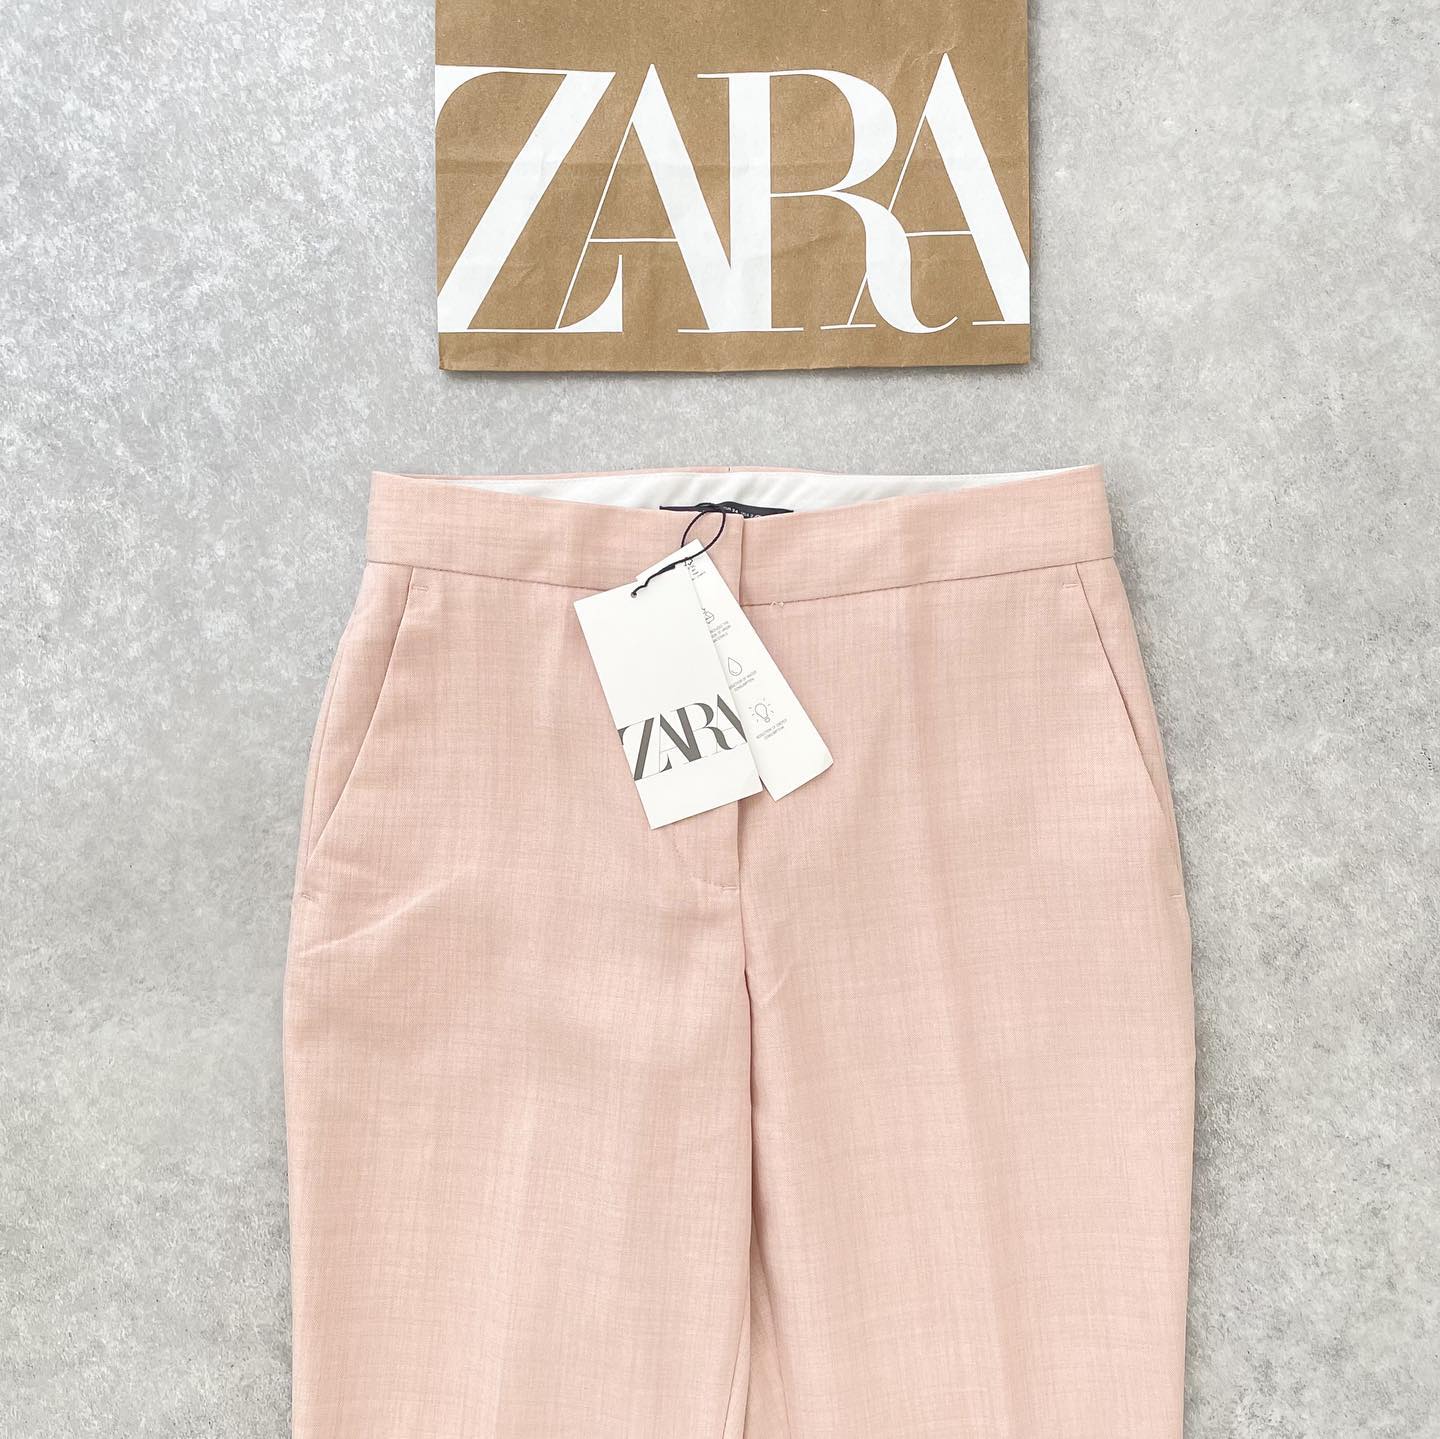 絶妙なカラー」が「ほんと使える」【ZARA】の“薄ピンクパンツ”特集